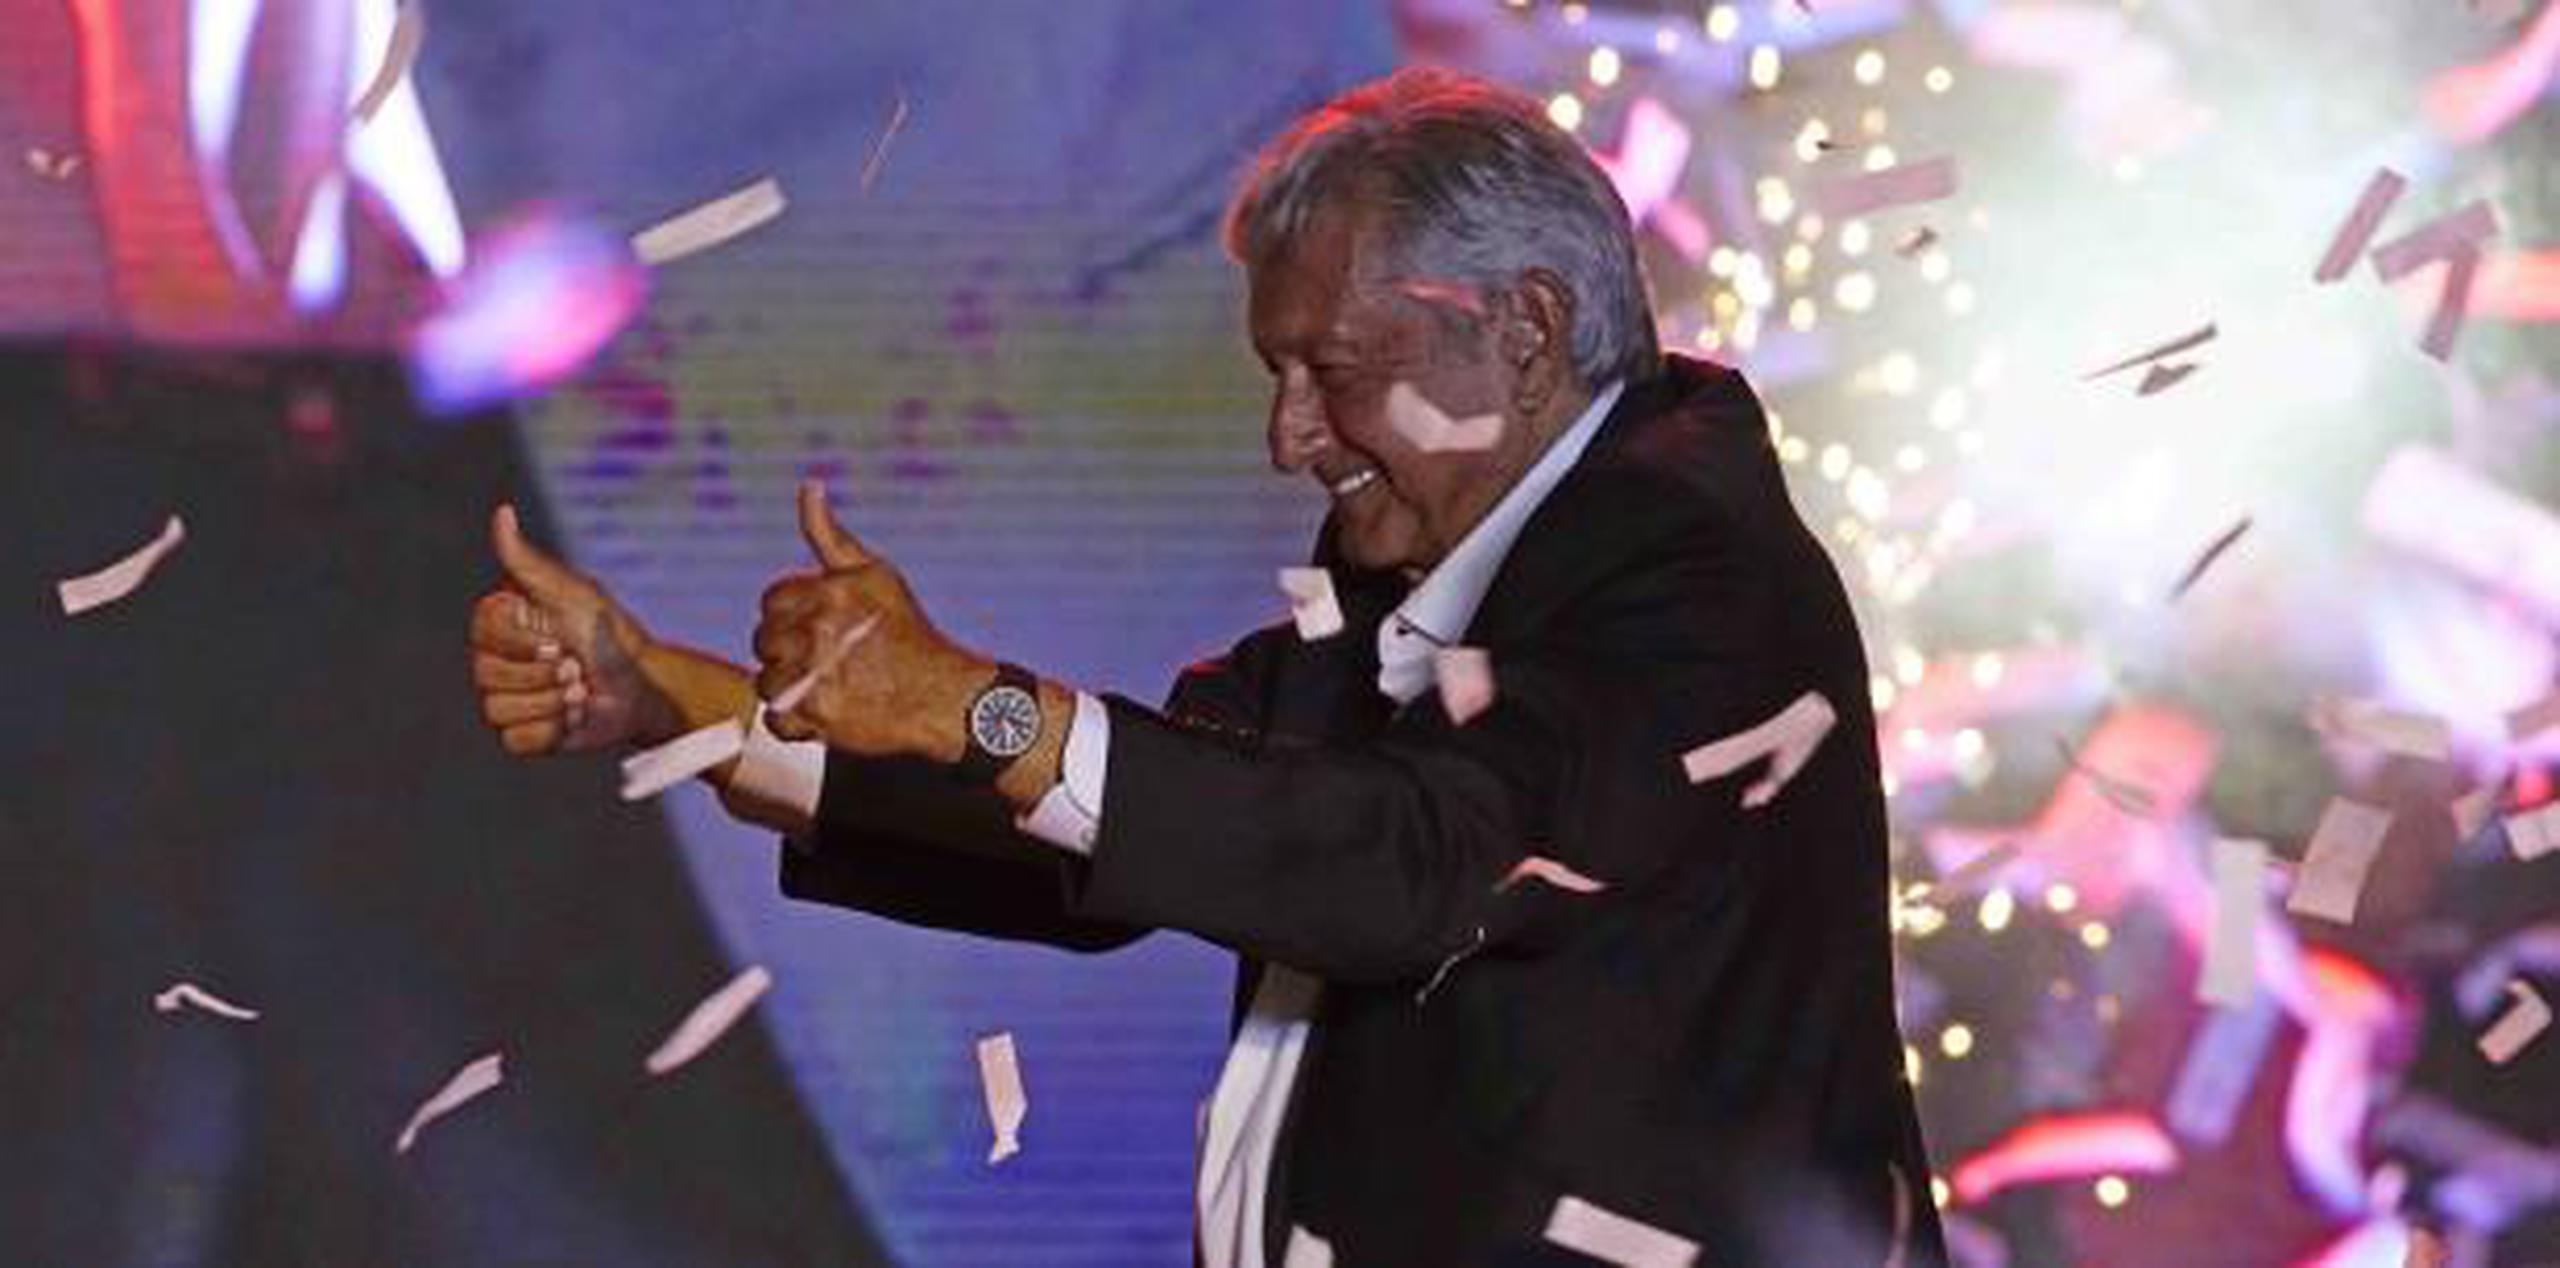 Andrés Manuel López Obrador es el favorito en las encuestas y ha destacado por su humor, como cuandose burló de sí mismo auto-apodándose “Andresmanuelovich” cuando le acusaron de tener tratos con los rusos. (AP)